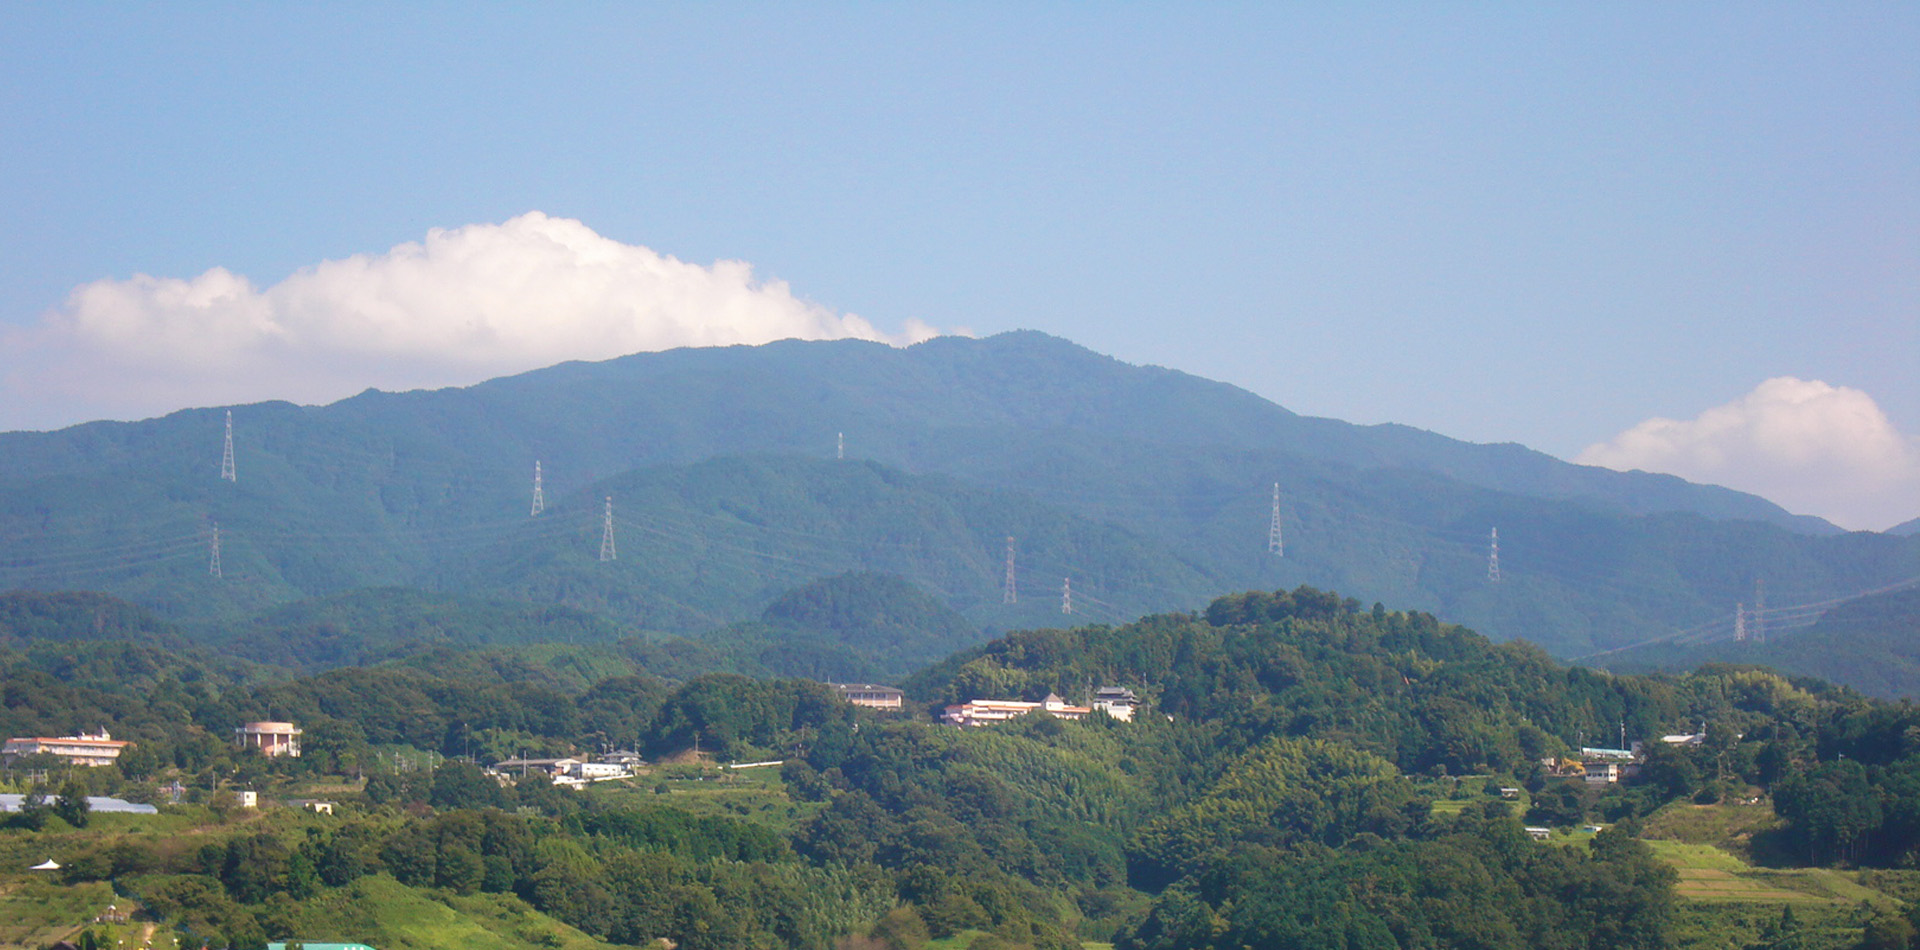 被指定為日本山岳遺產的名山金剛山